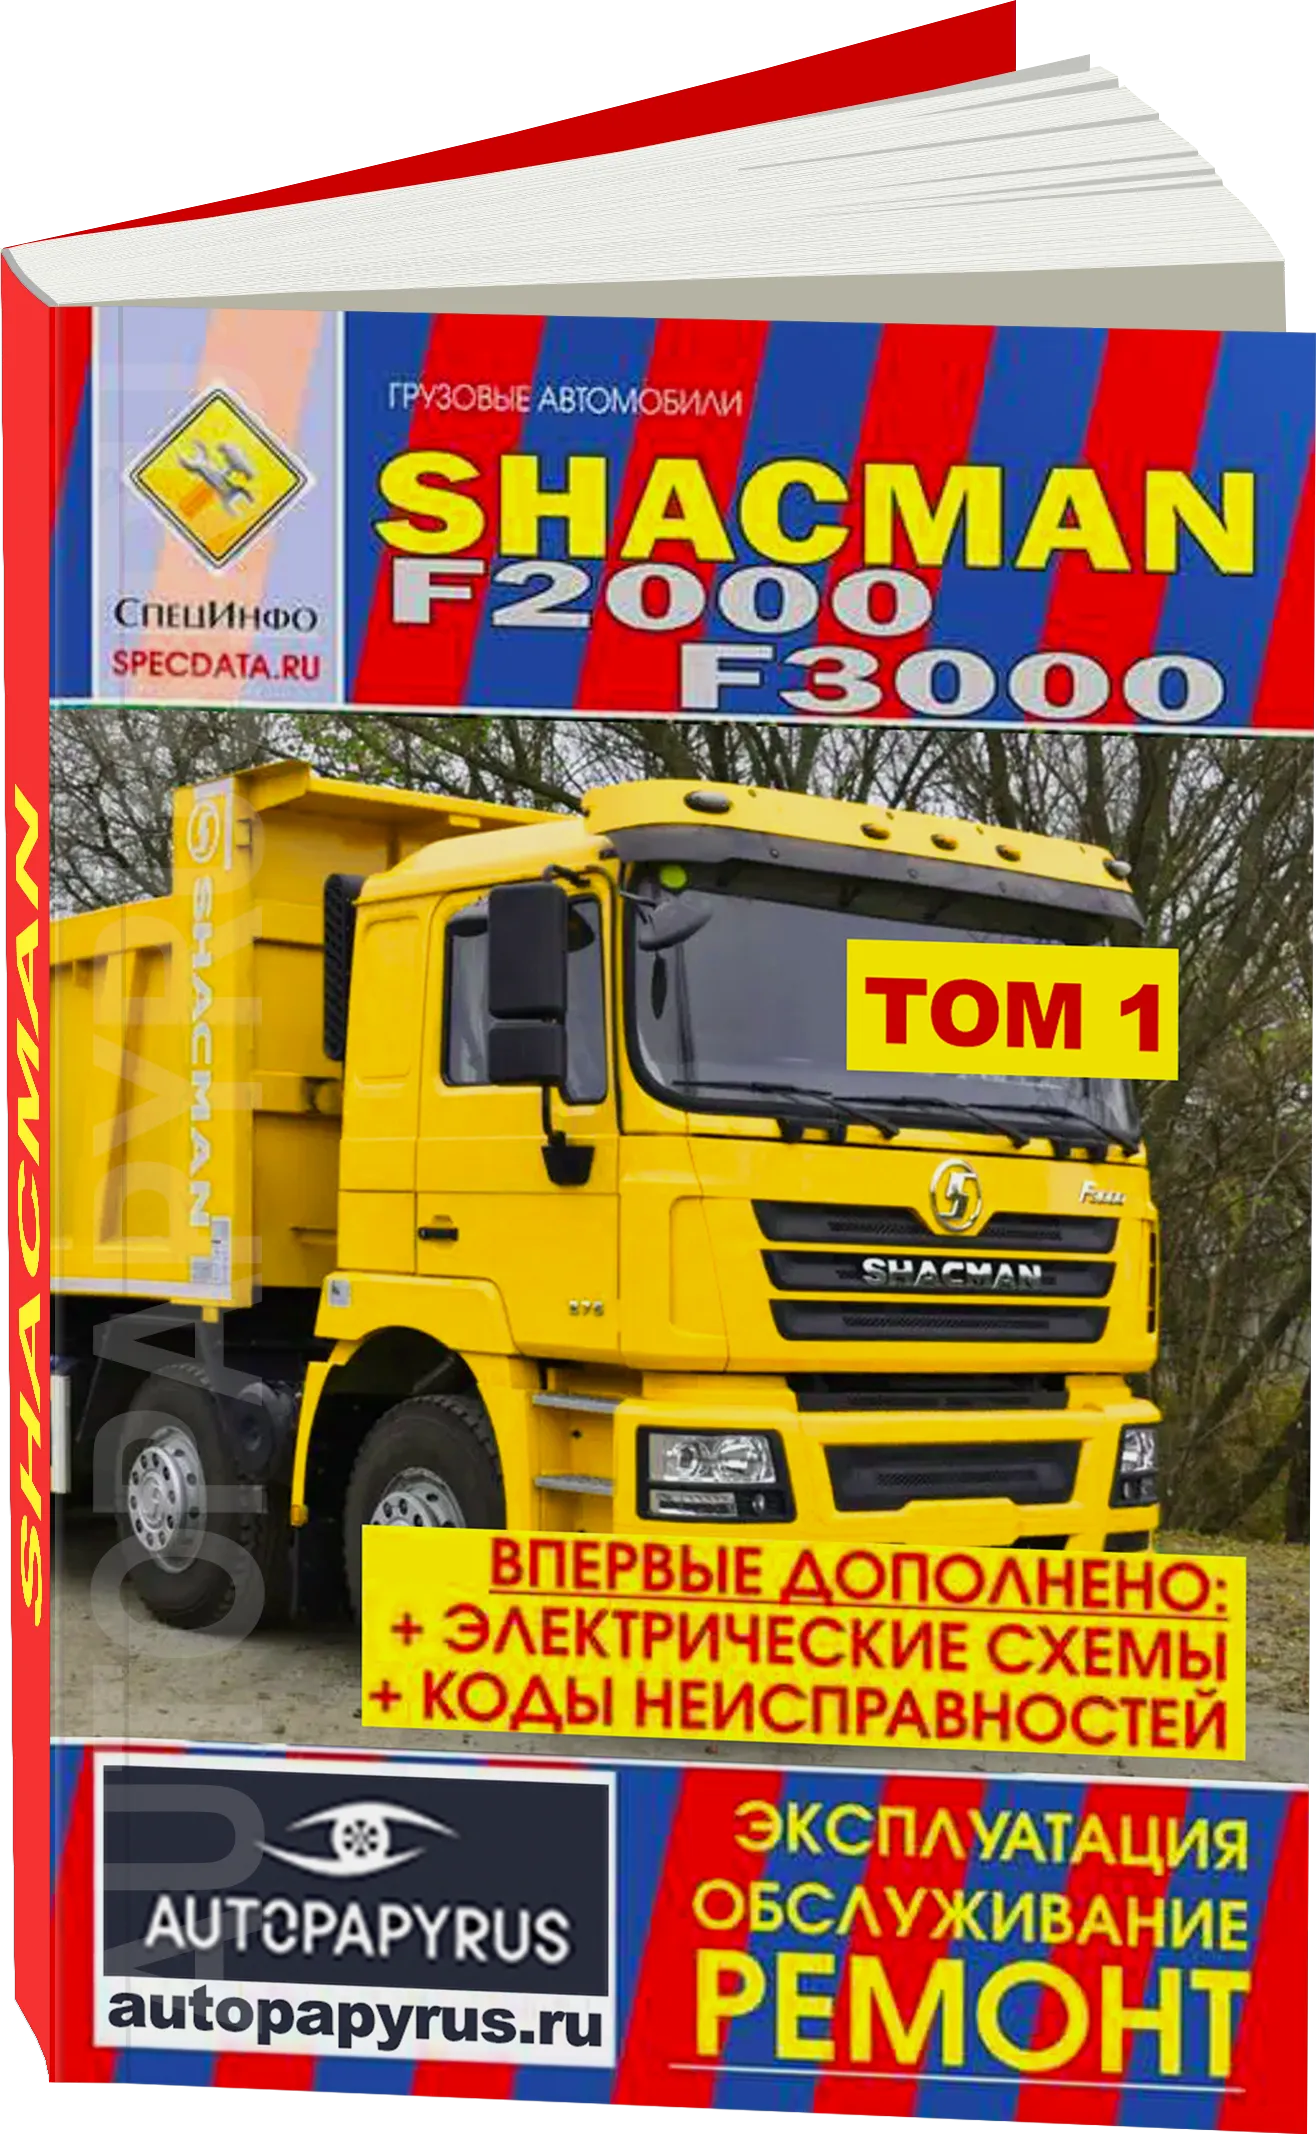 Комплект литературы по ремонту и обслуживанию Shacman F2000 / F3000